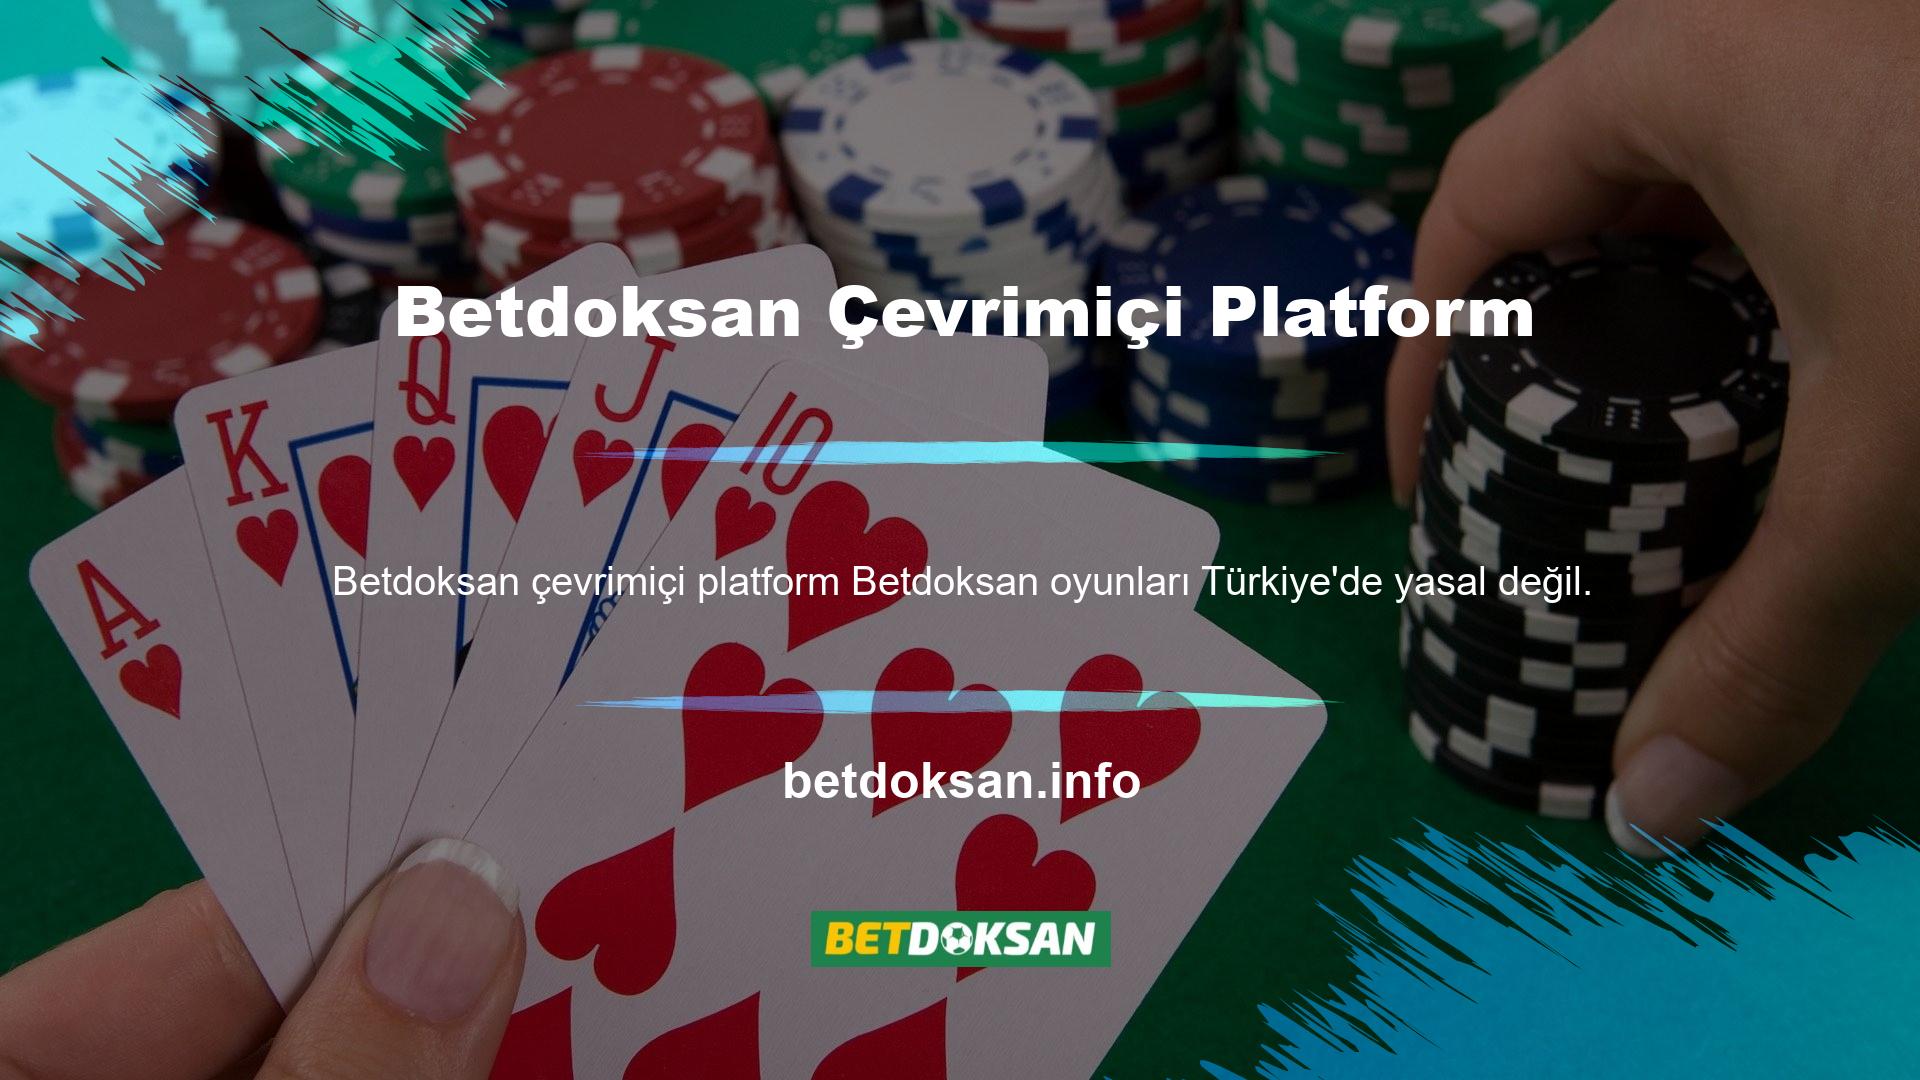 Ülkemizde faaliyet gösteren yasadışı casino şirketleri, Türkiye Cumhuriyeti yasalarını ihlal ettikleri için yasal kabul edilmemektedir